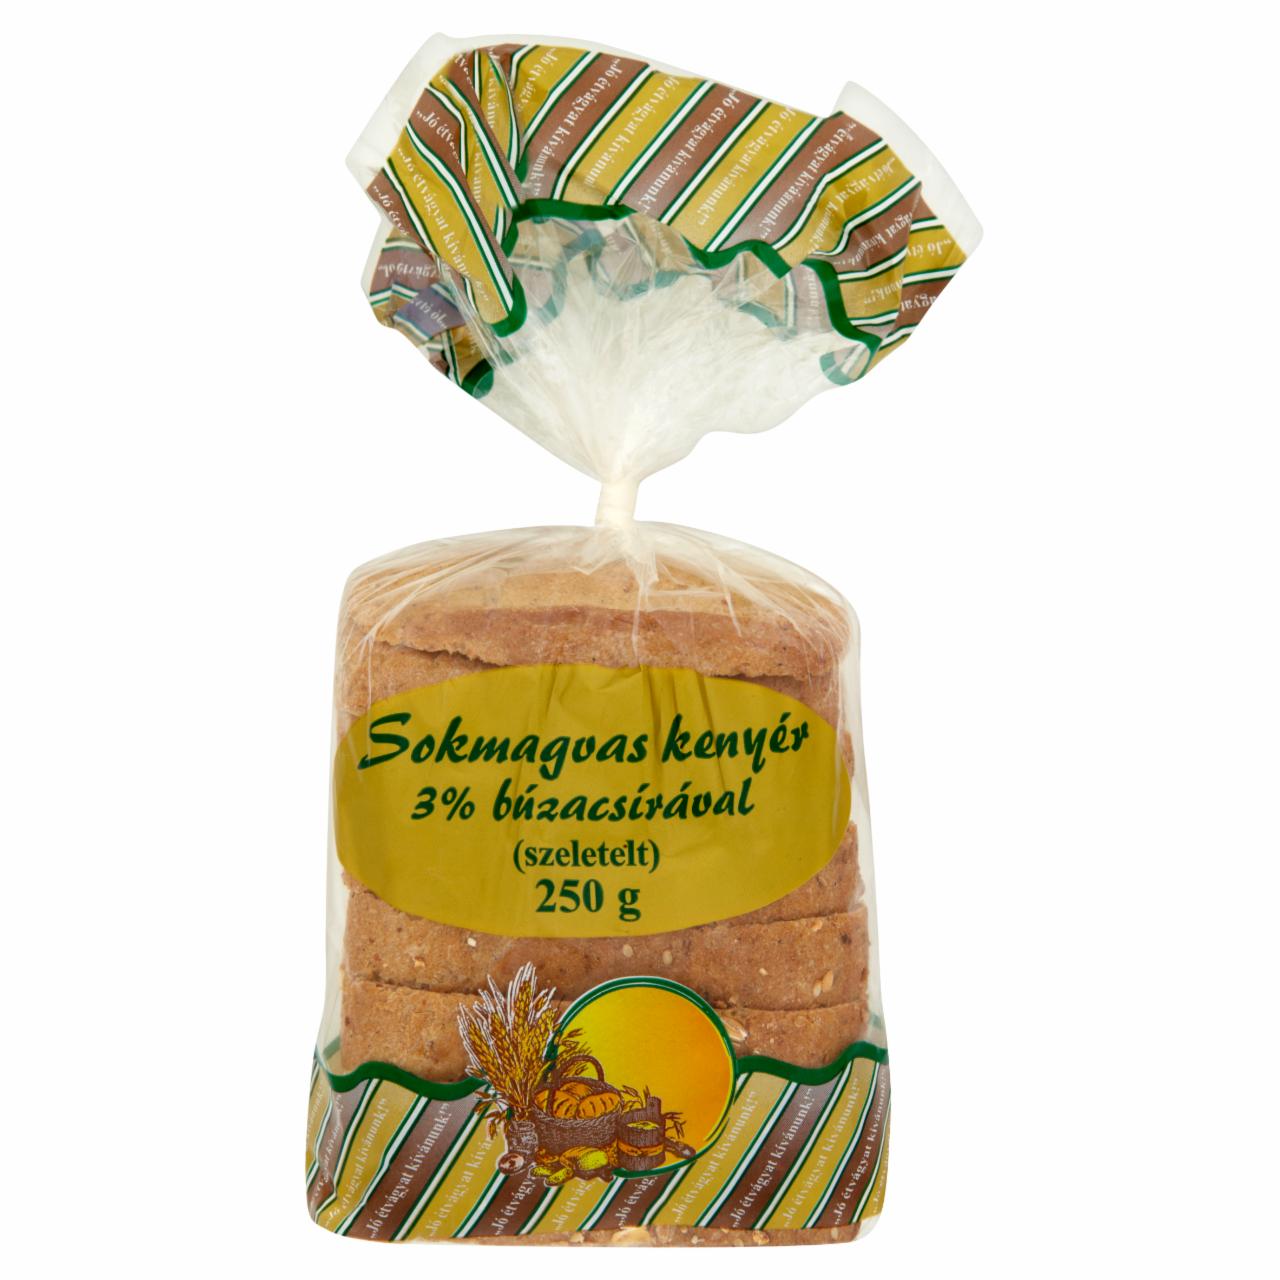 Képek - Sokmagvas szeletelt kenyér búzacsírával 250 g